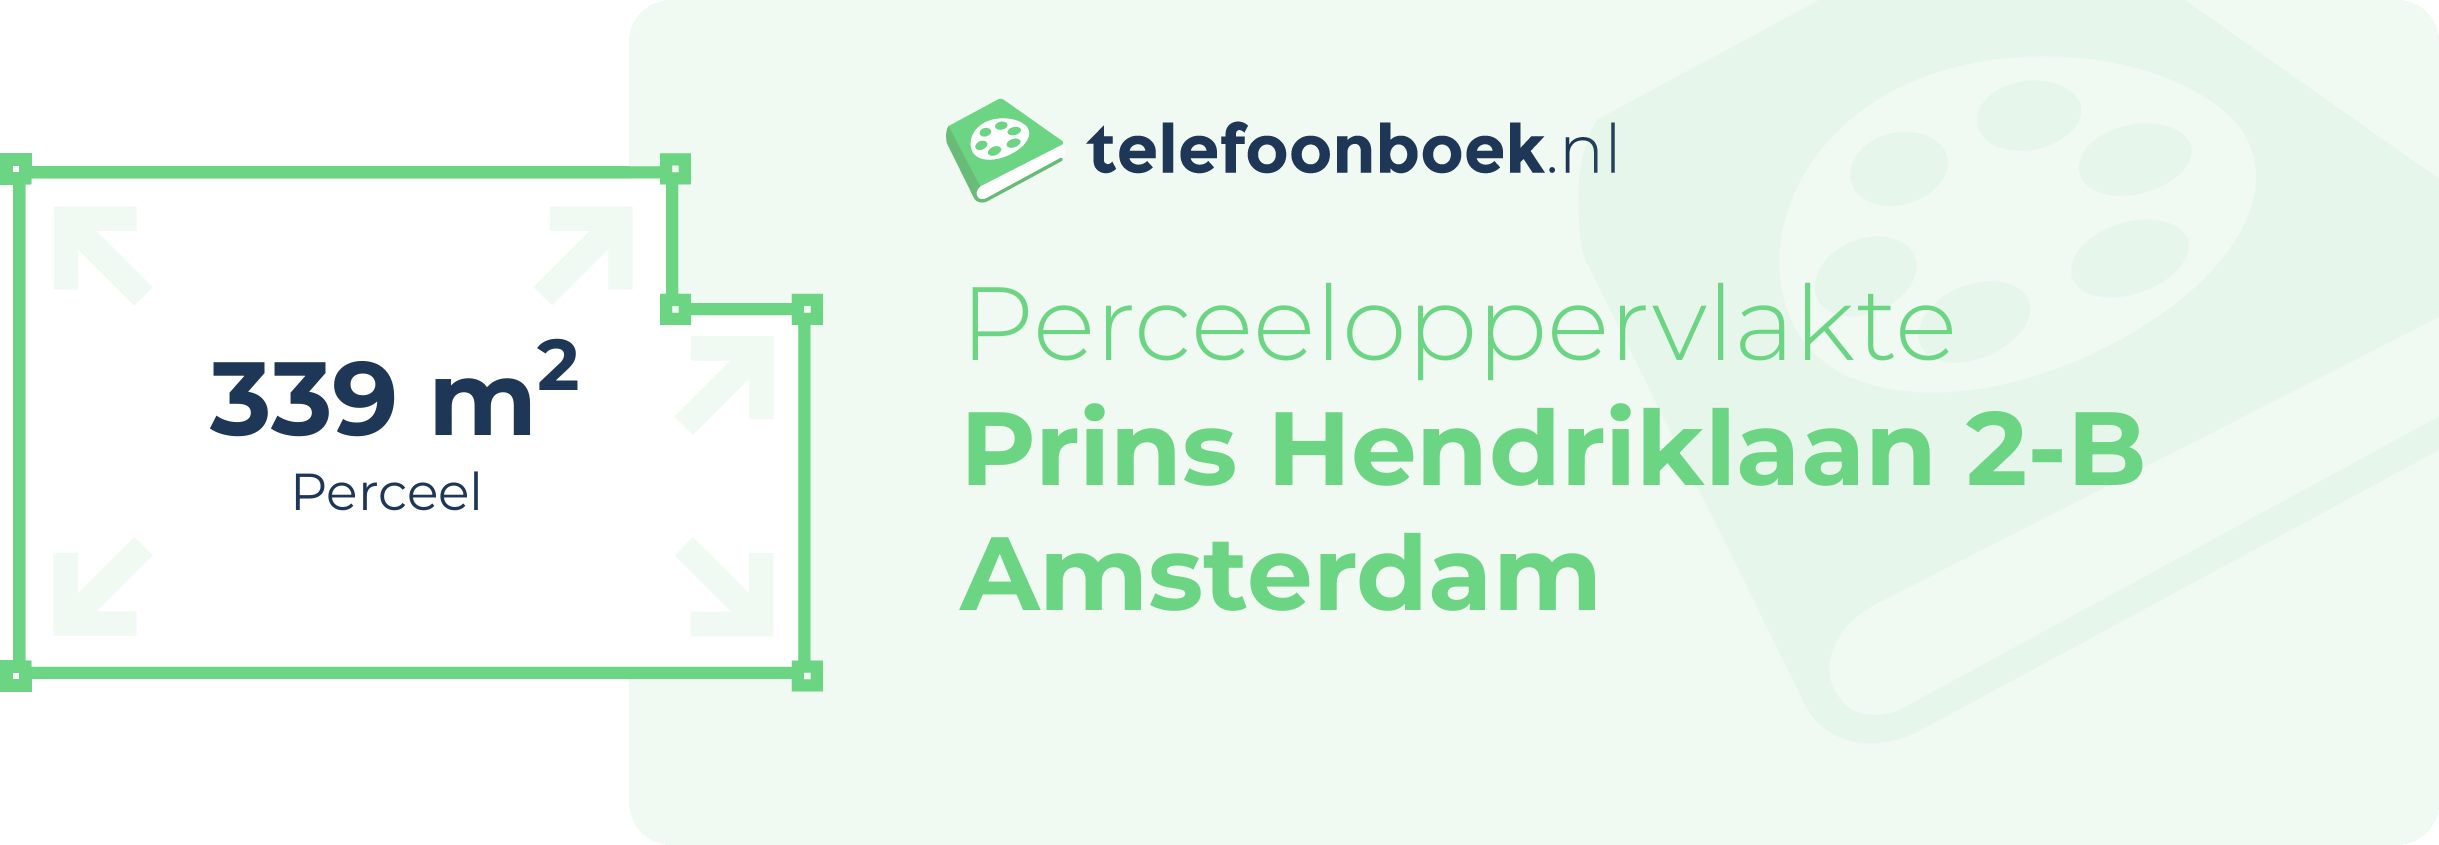 Perceeloppervlakte Prins Hendriklaan 2-B Amsterdam